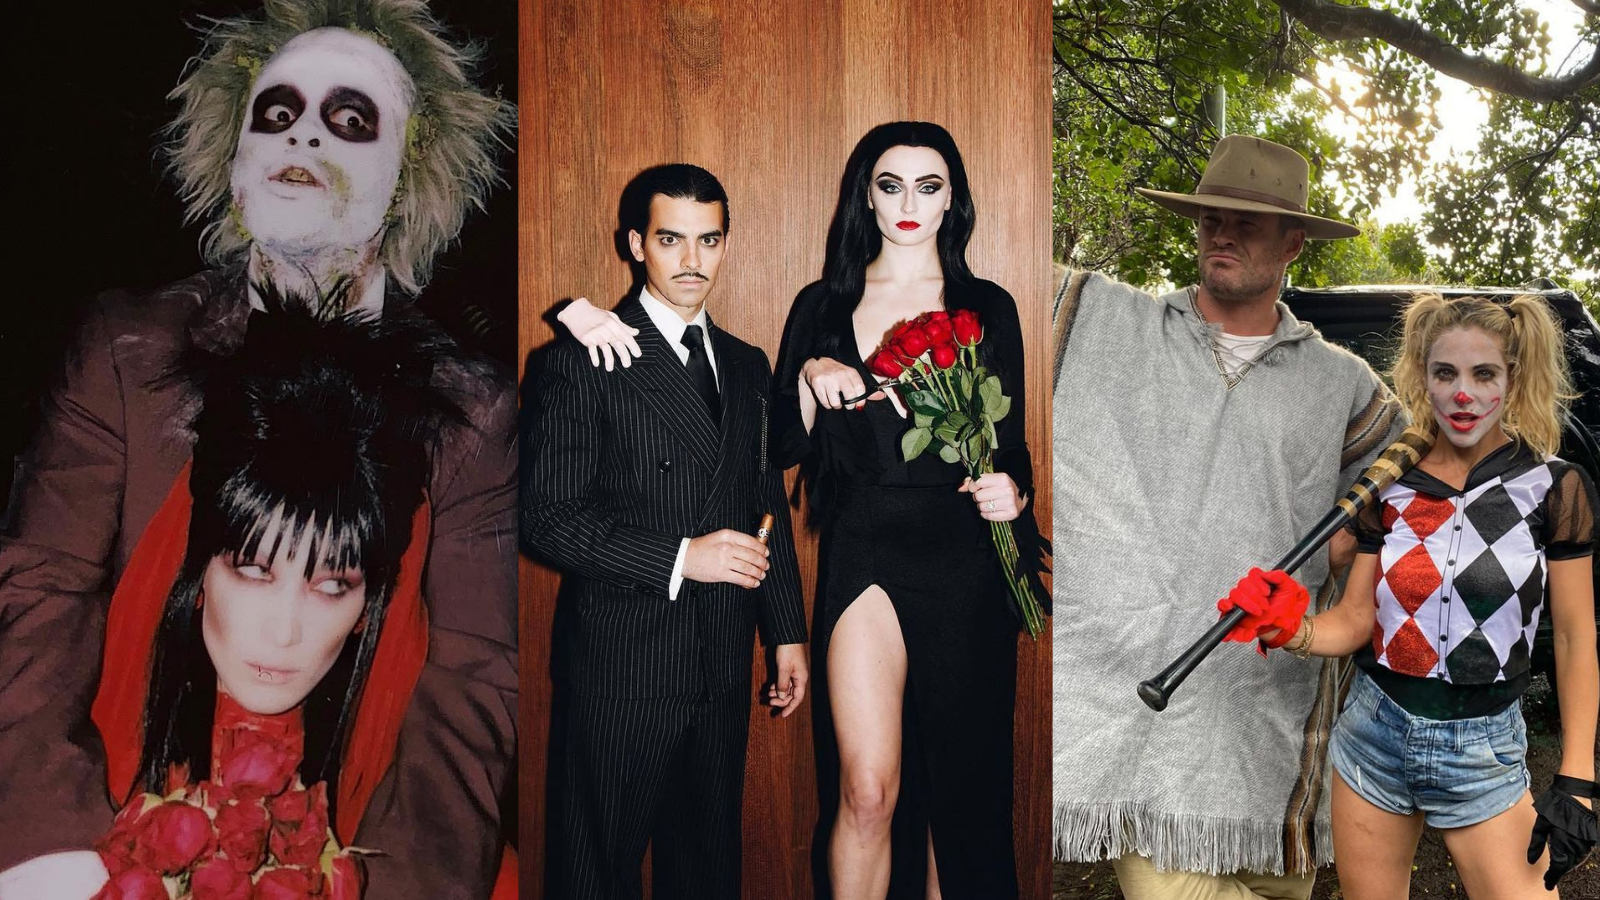 Cinco ideas para disfrazarte en Halloween en pareja - El Independiente